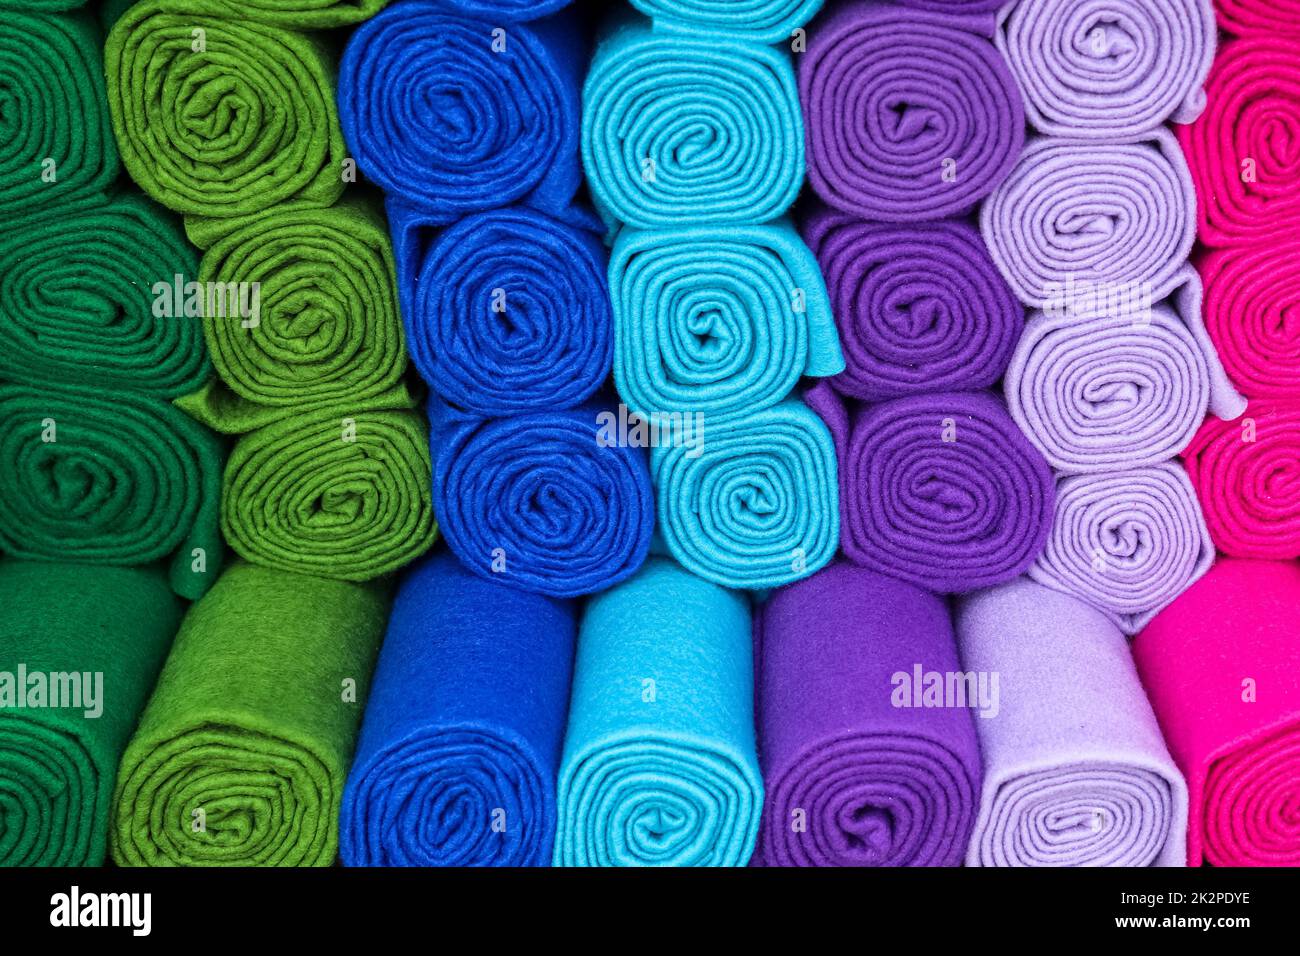 Échantillons de tissus et de tissus de différentes couleurs trouvés sur un marché de tissus. Banque D'Images